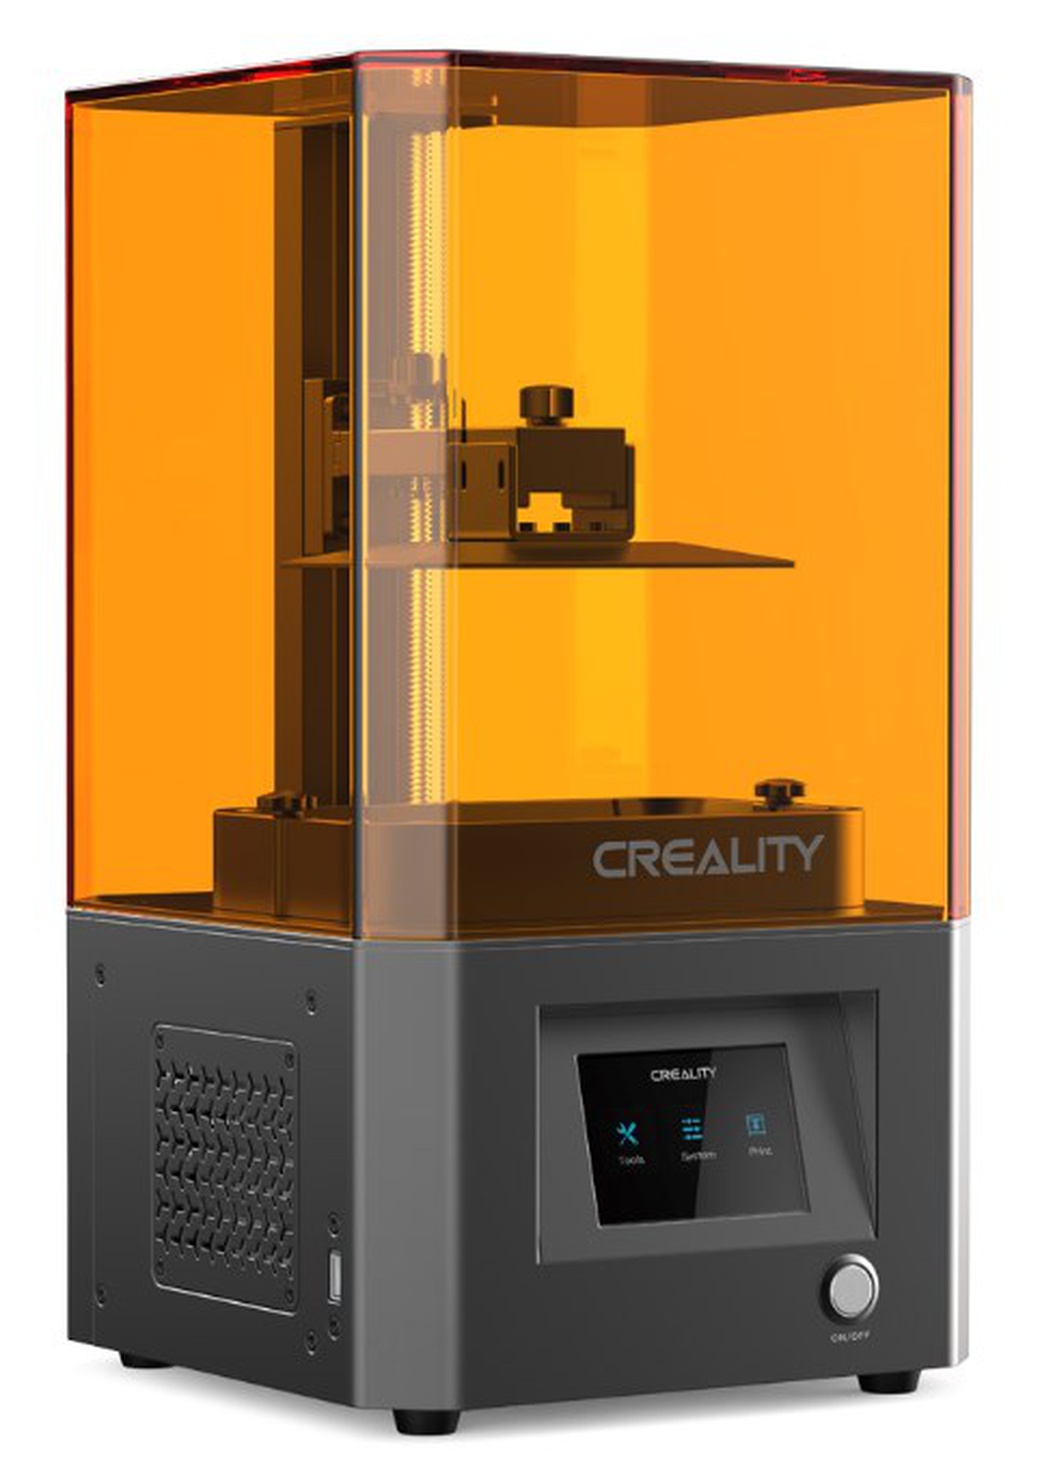 3D принтер Creality 3D LD-002R фото